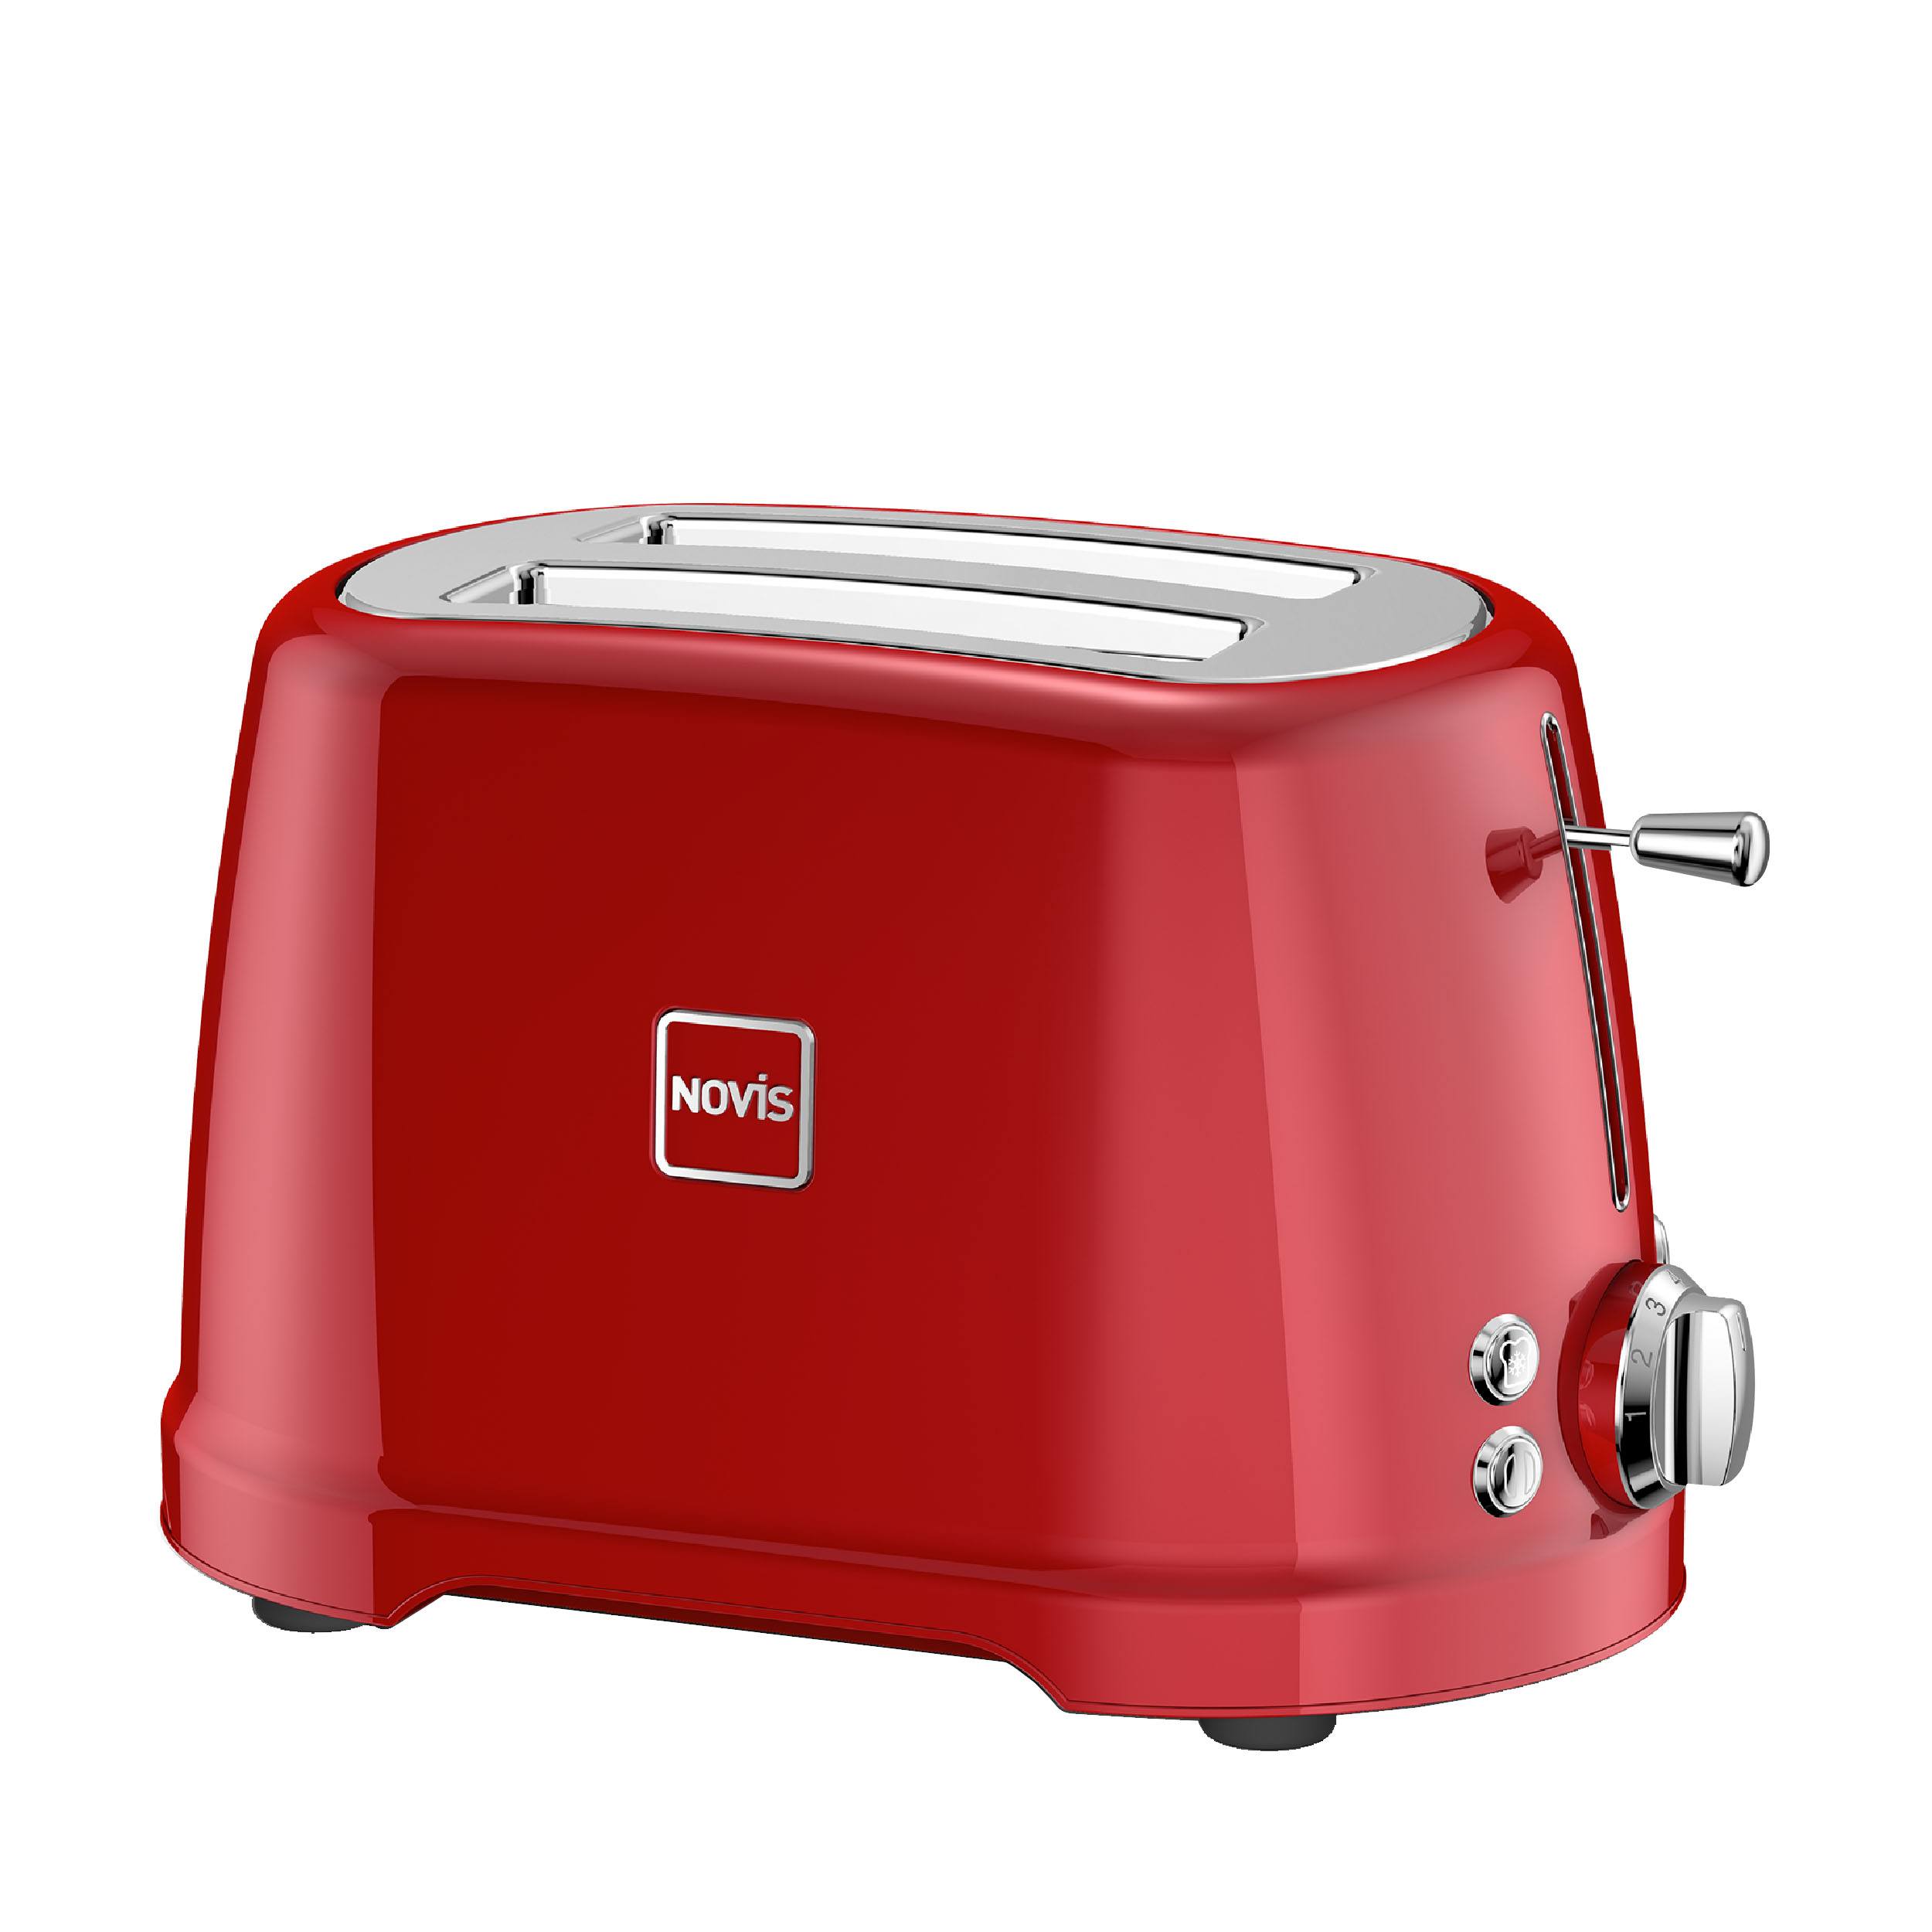 Novis T2 Toaster